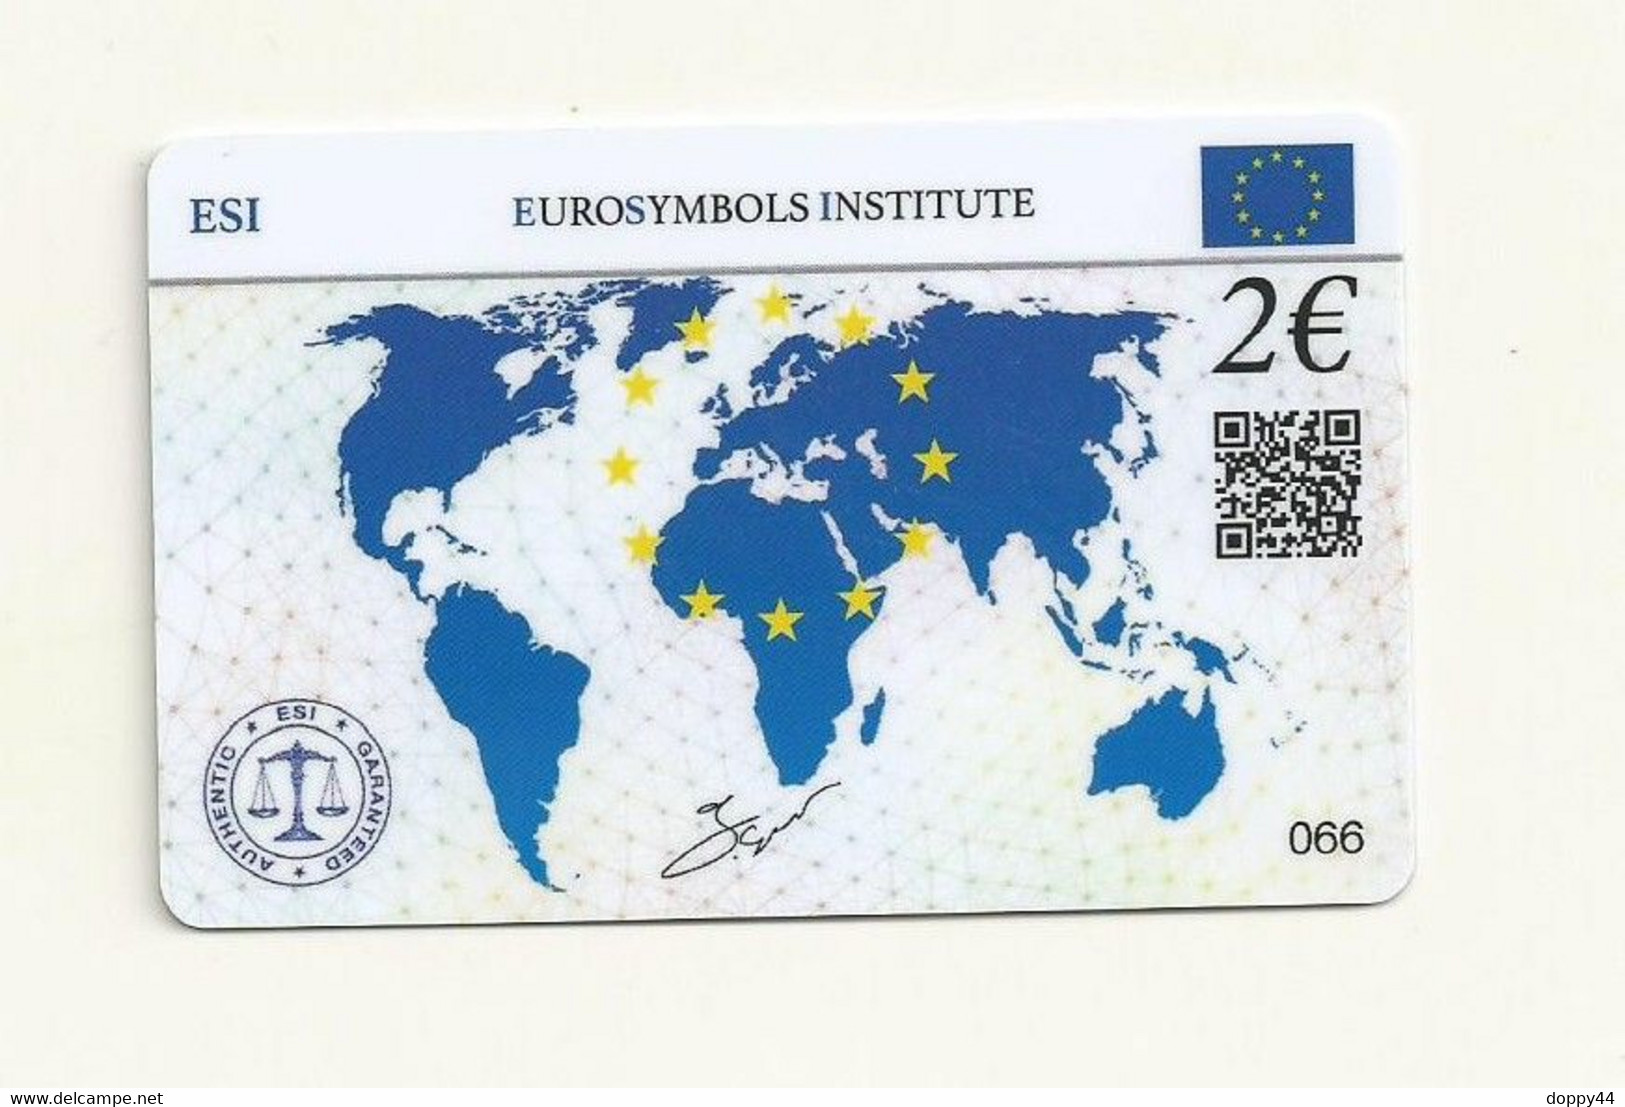 CARTE DE COLLECTION SANS PIECE LUXEMBOURG EUROSYMBOLS INSTITUTE ESI ID CARD MILLESINE 2004. - Luxemburgo